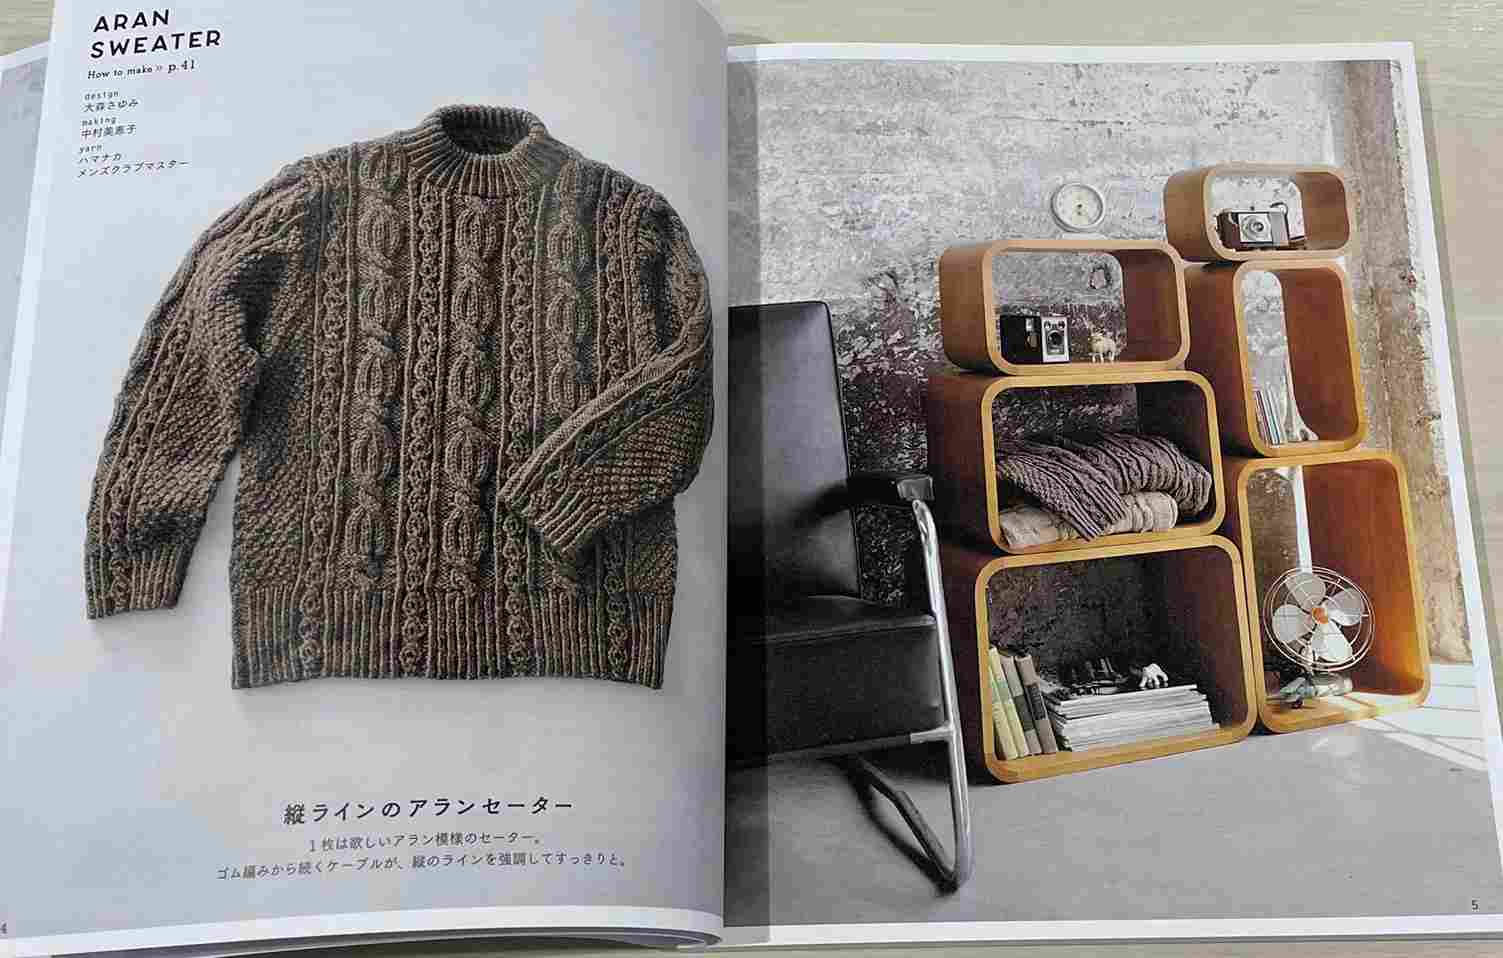 2022 新作 本 小瀬千枝のニットワーク アラン模様のセーター 日本ヴォーグ社 手編み本 編み物本 2022